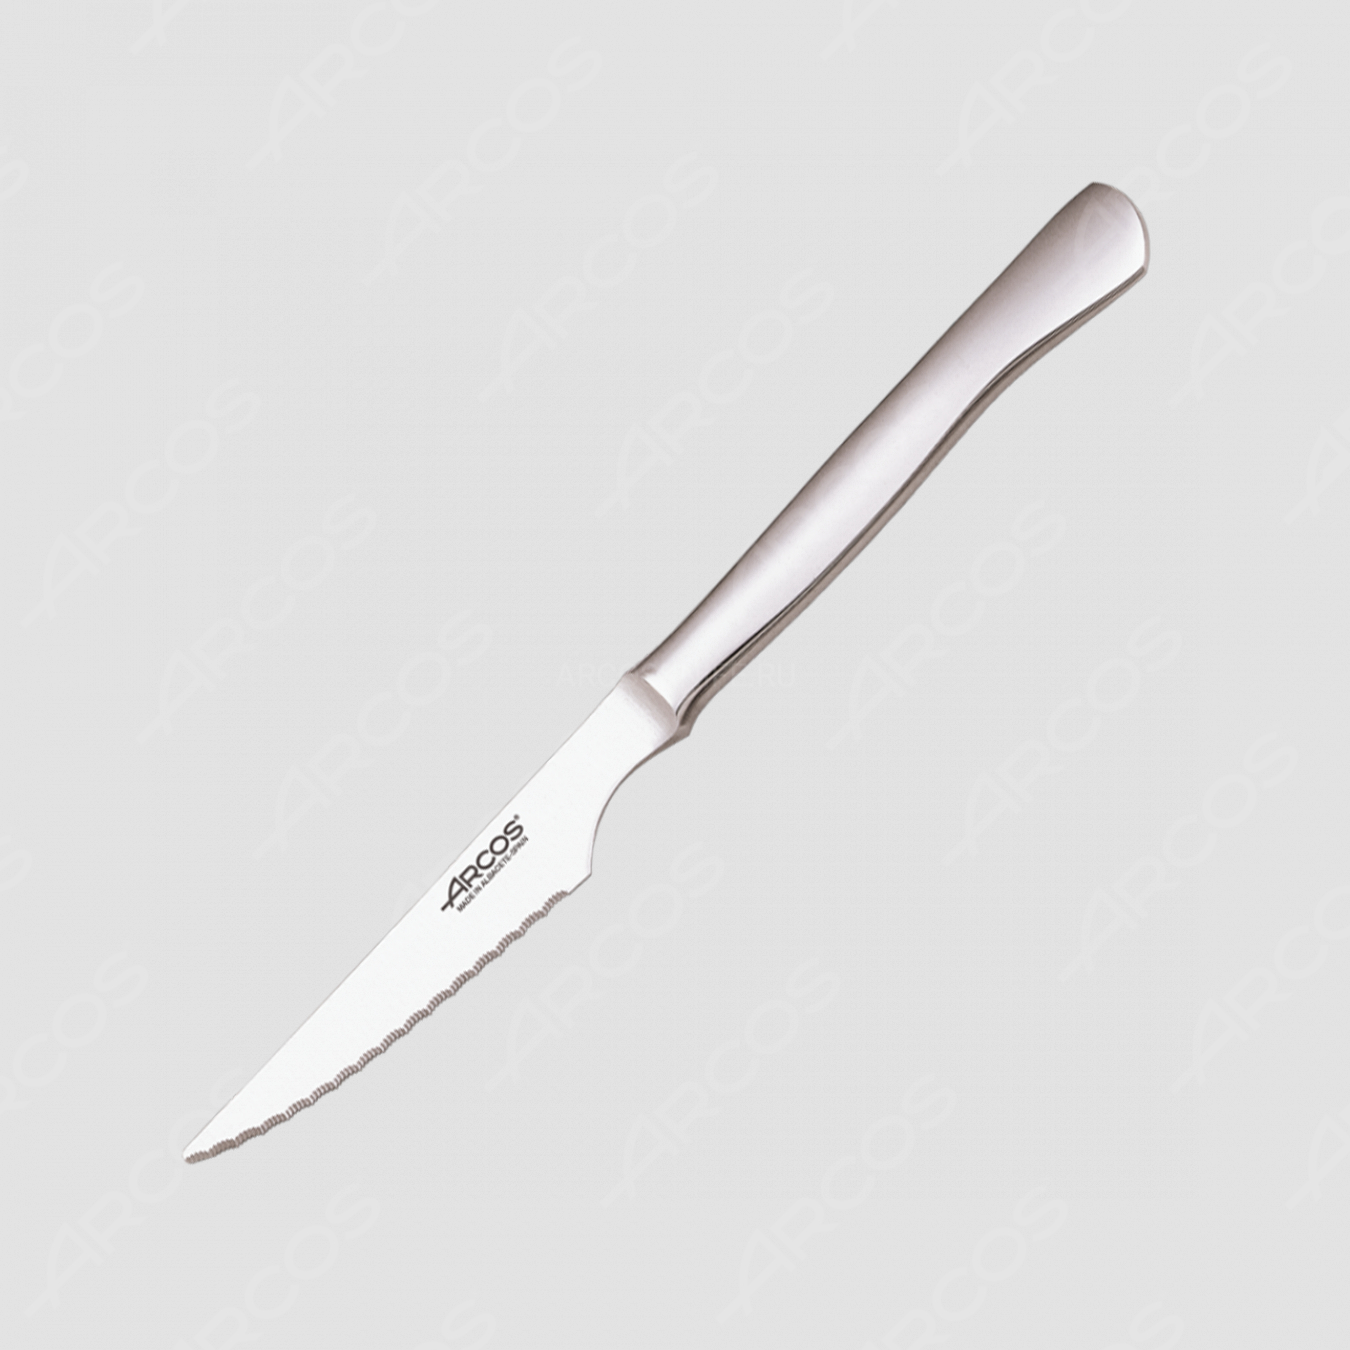 Нож столовый для стейка, 110 мм, рукоять нержавеющая сталь, серия STEAK, ARCOS, Испания